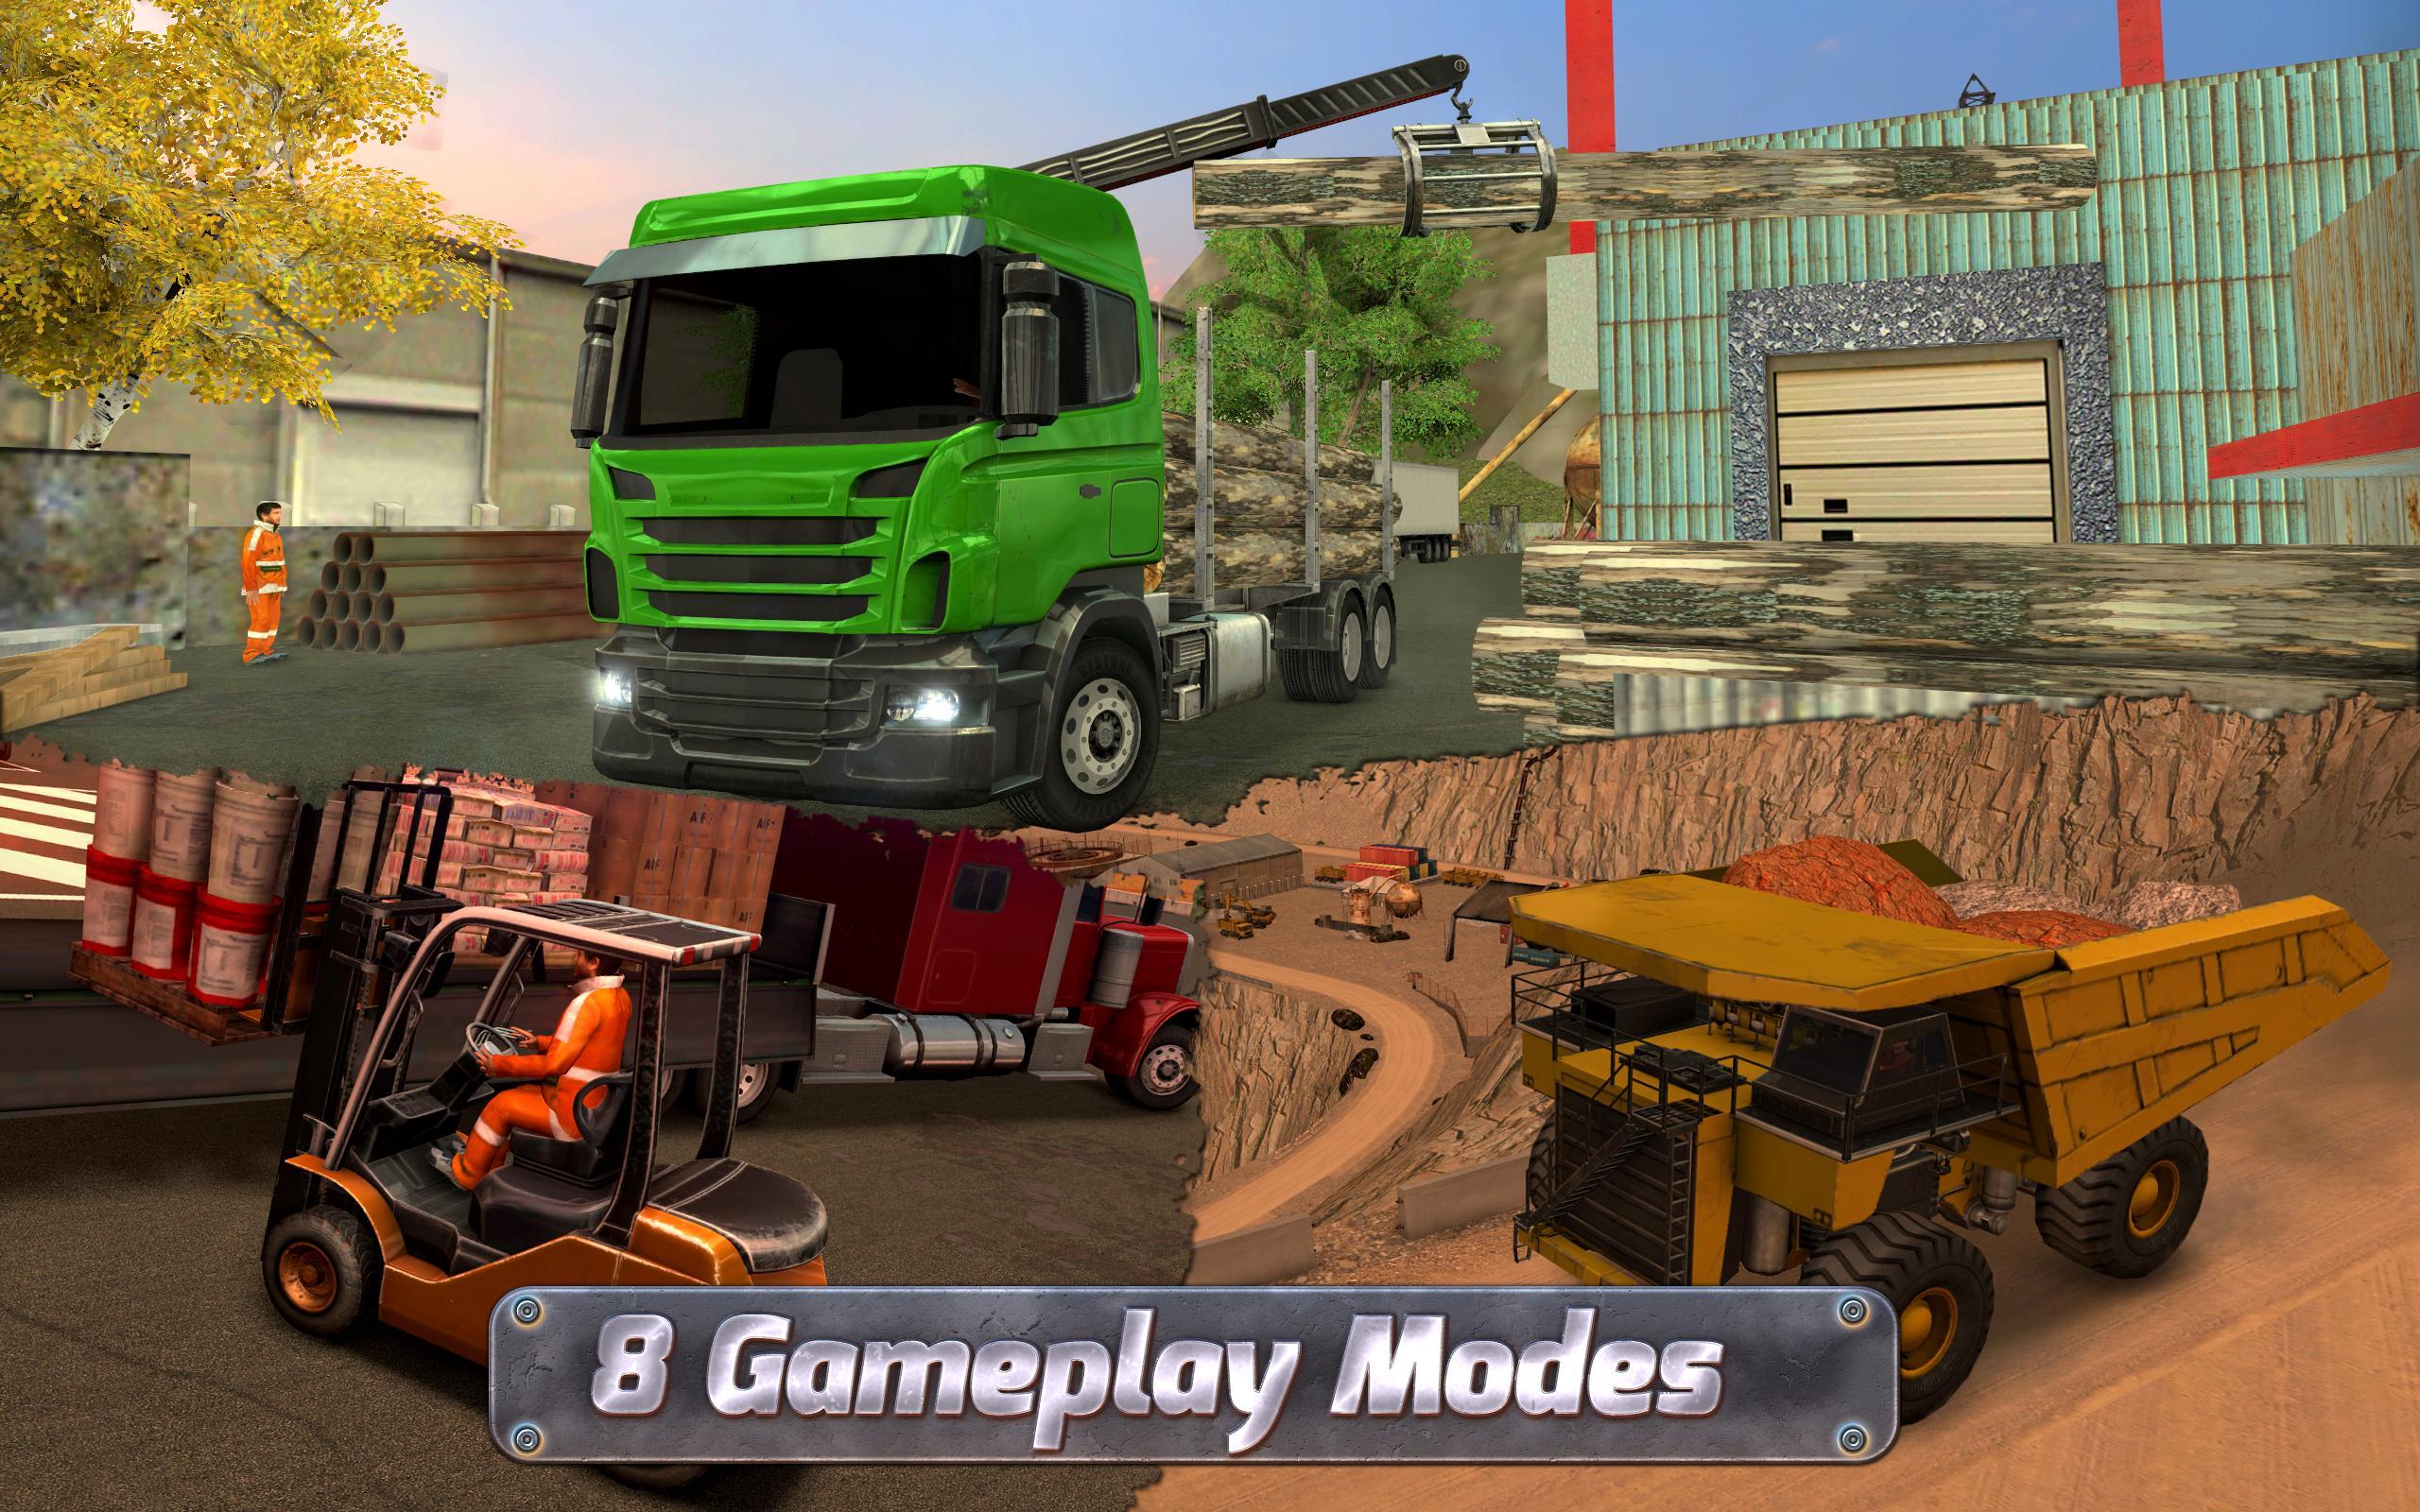 Играть симулятор много денег. Extreme Truck Simulator. Truck Construction симулятор 2017. Симулятор спецтехники 2. Машины Конструктион симулятор.